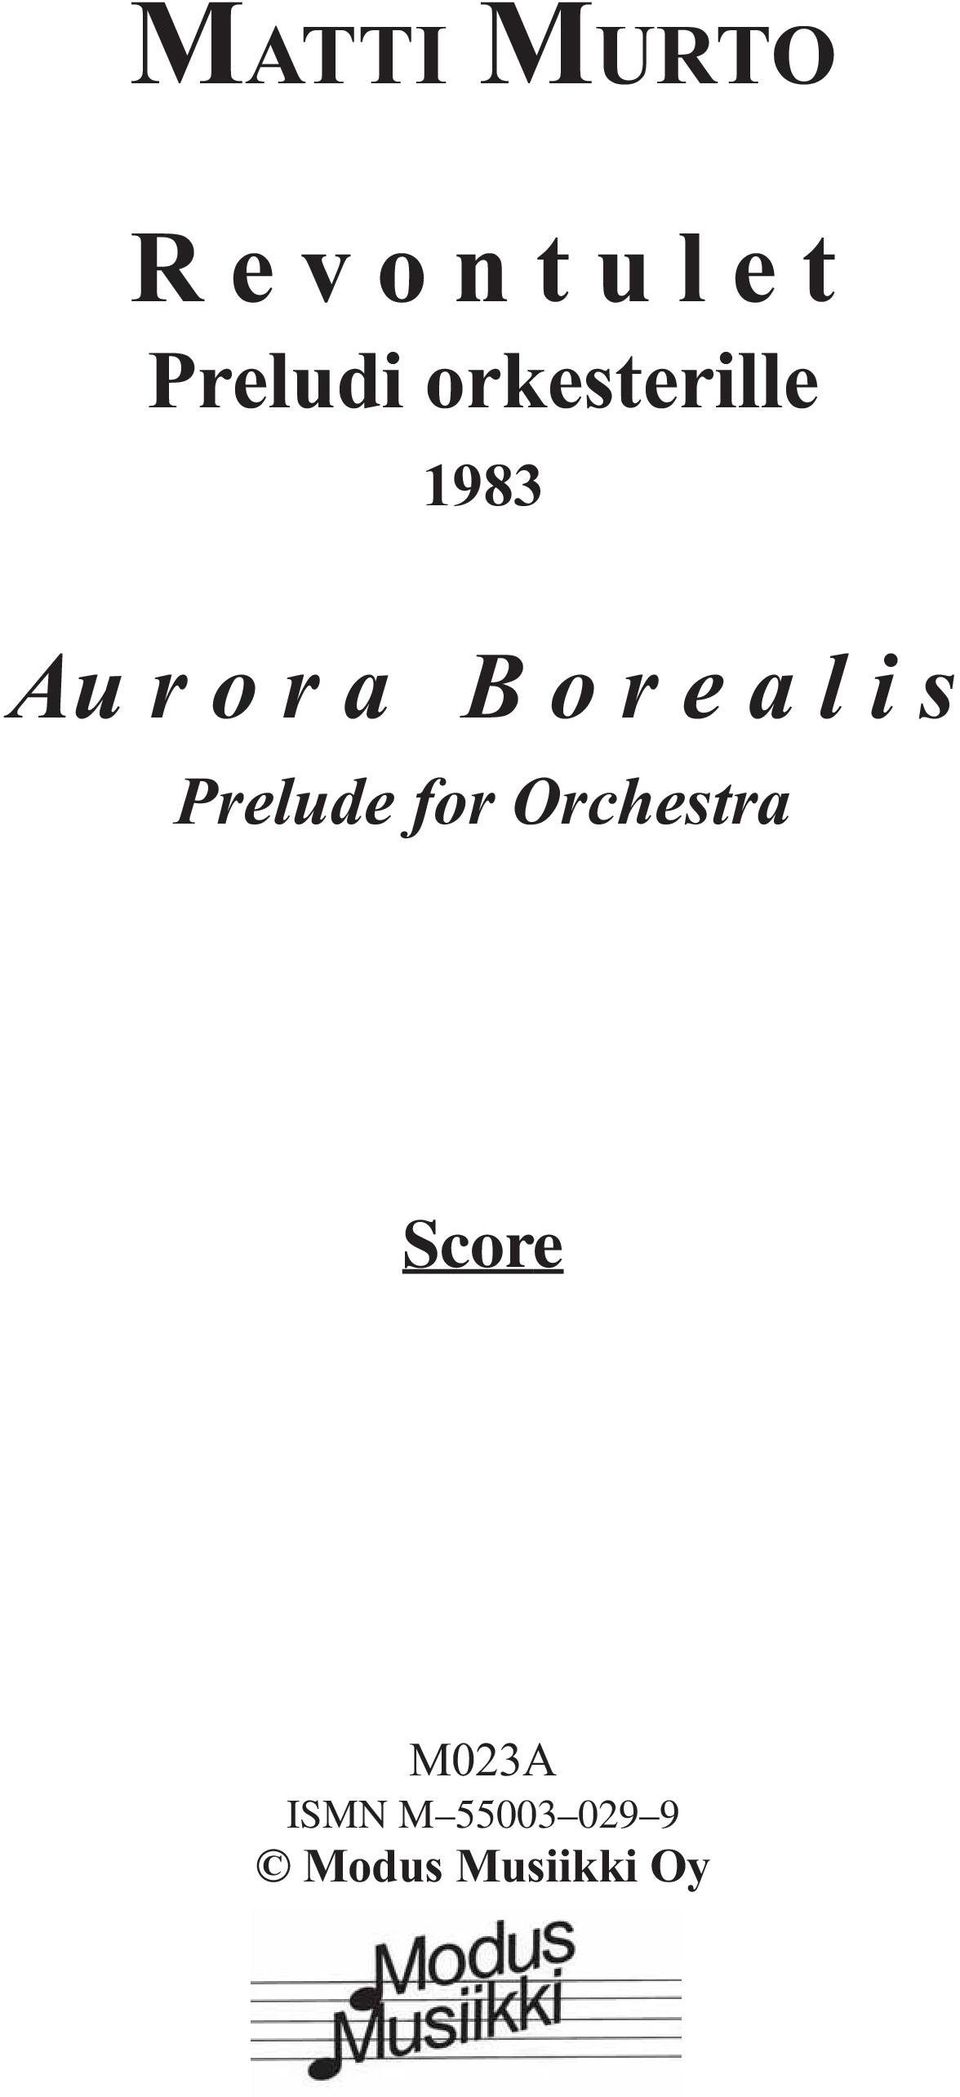 B o r e a l i s Prelude for Orchestra